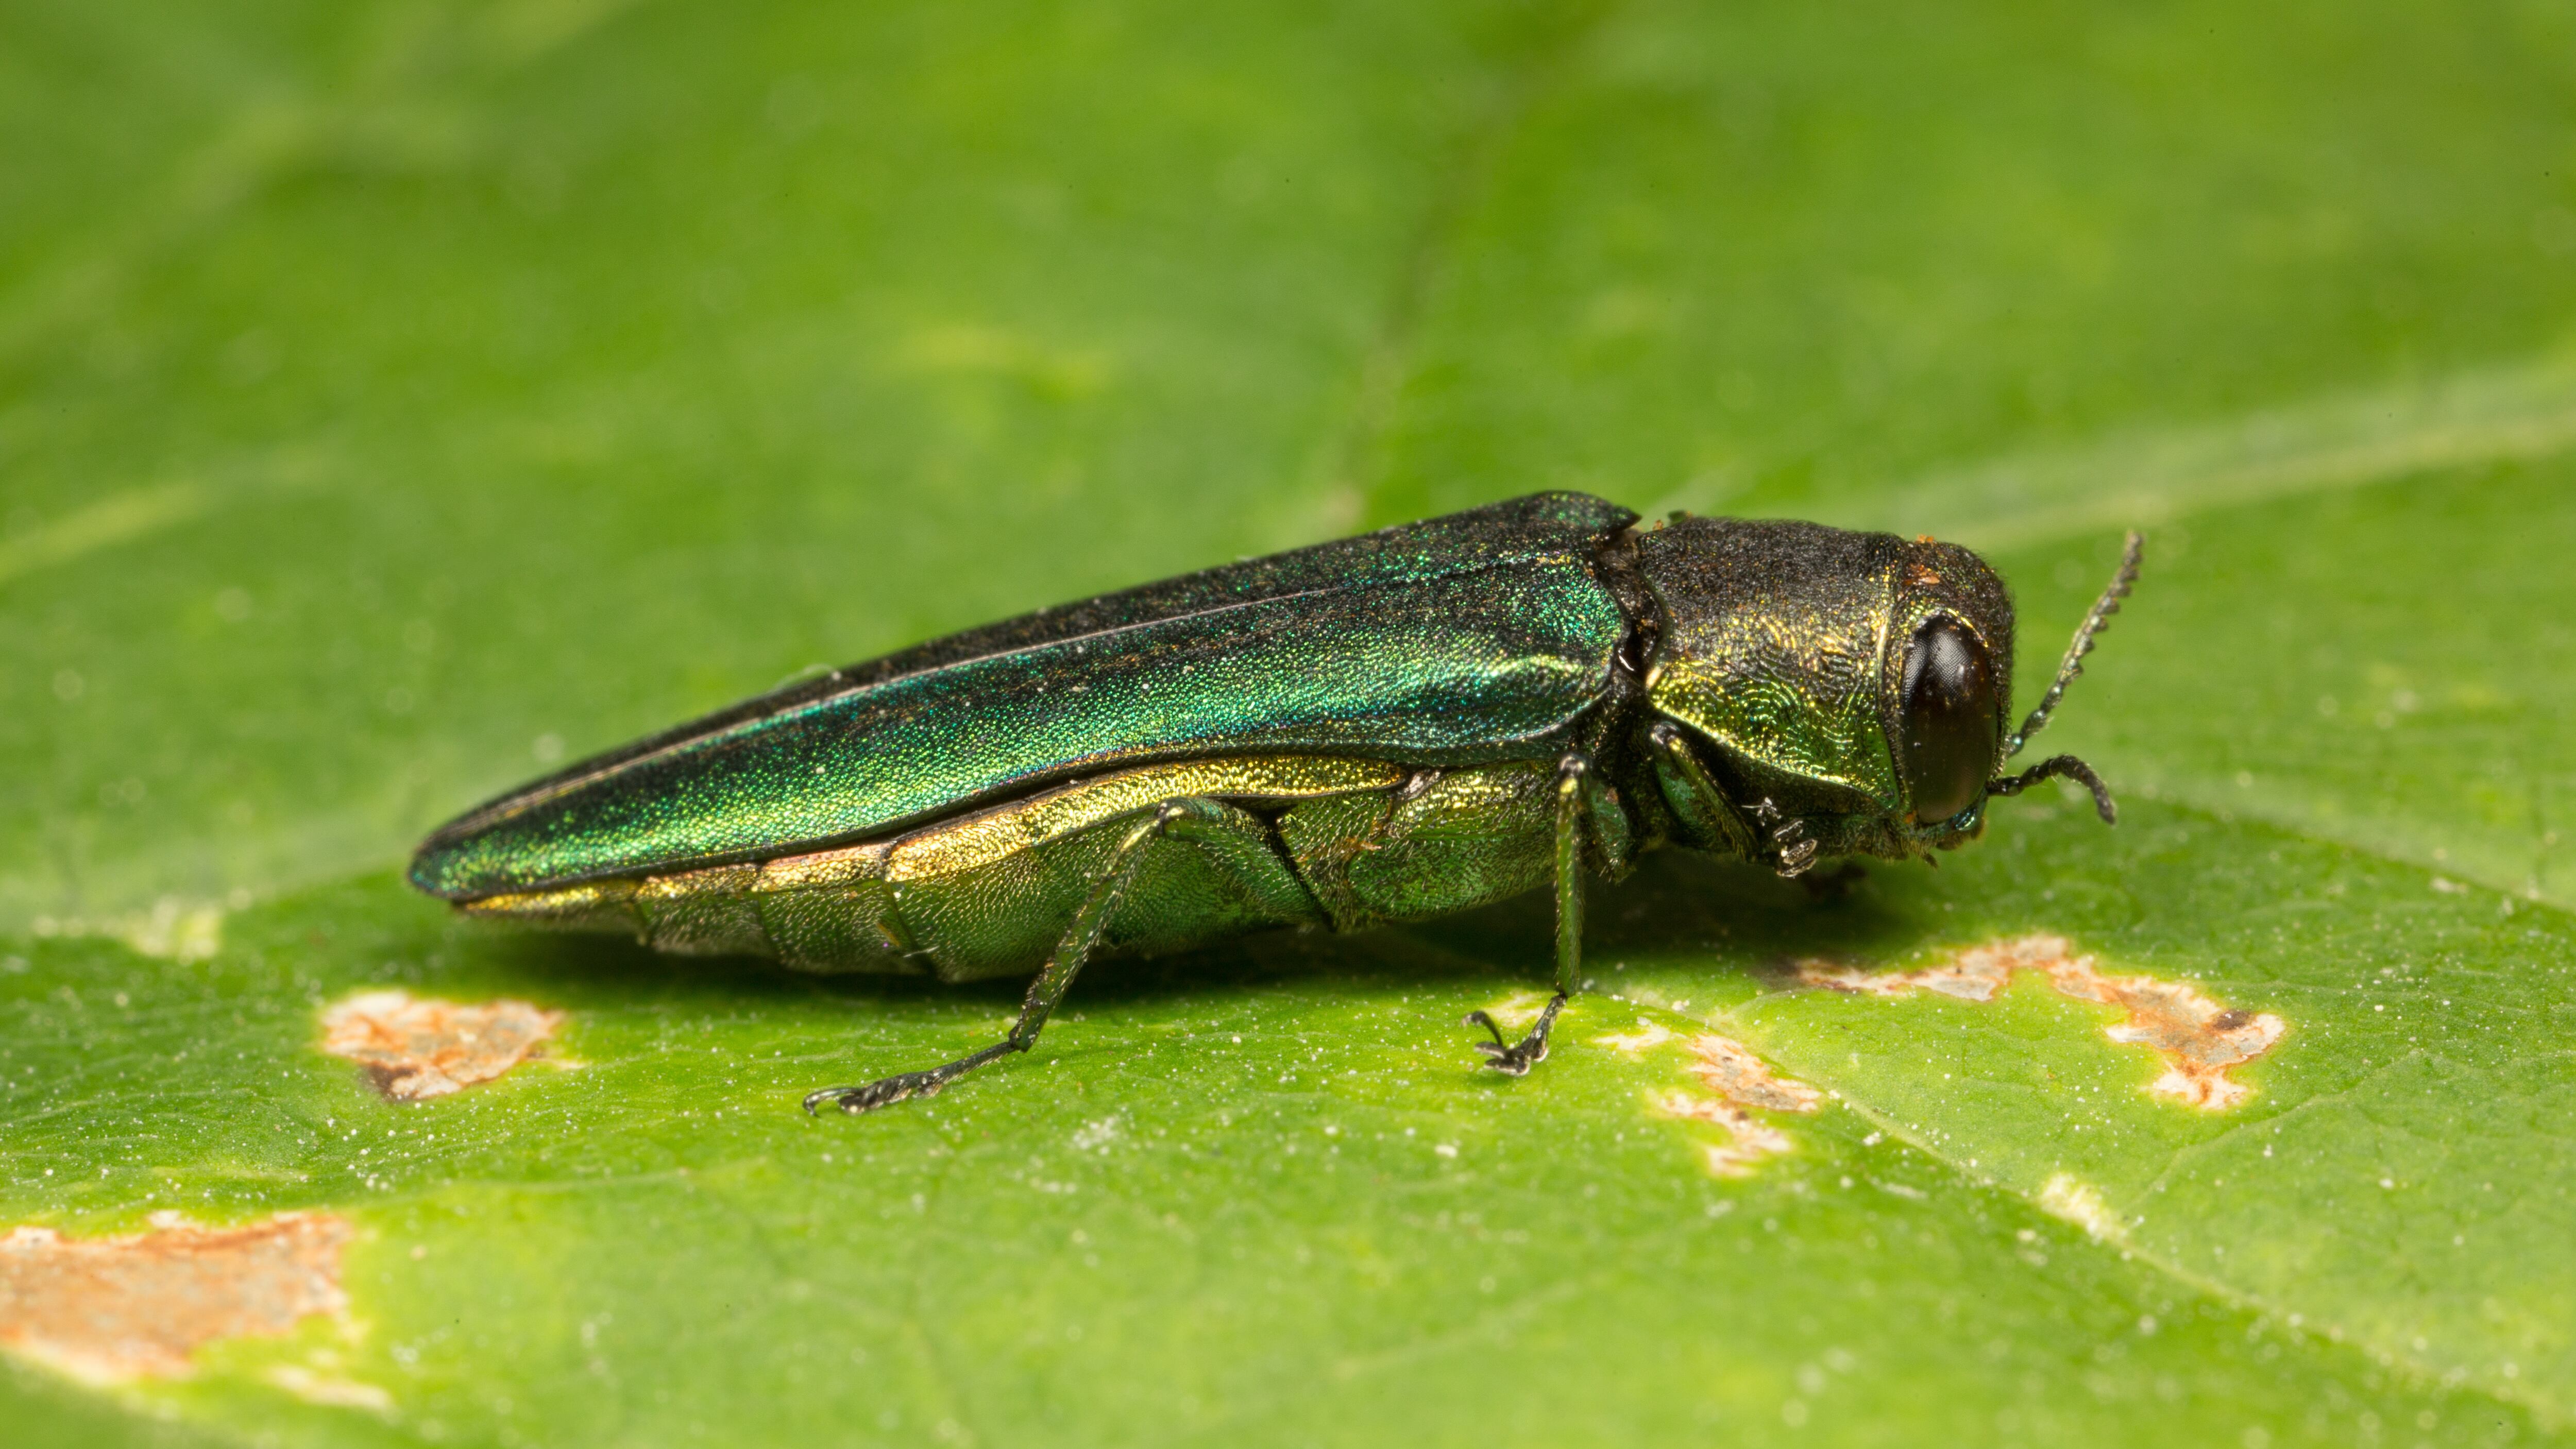 The Emerald ash borer beetle has been wreaking havoc in North America